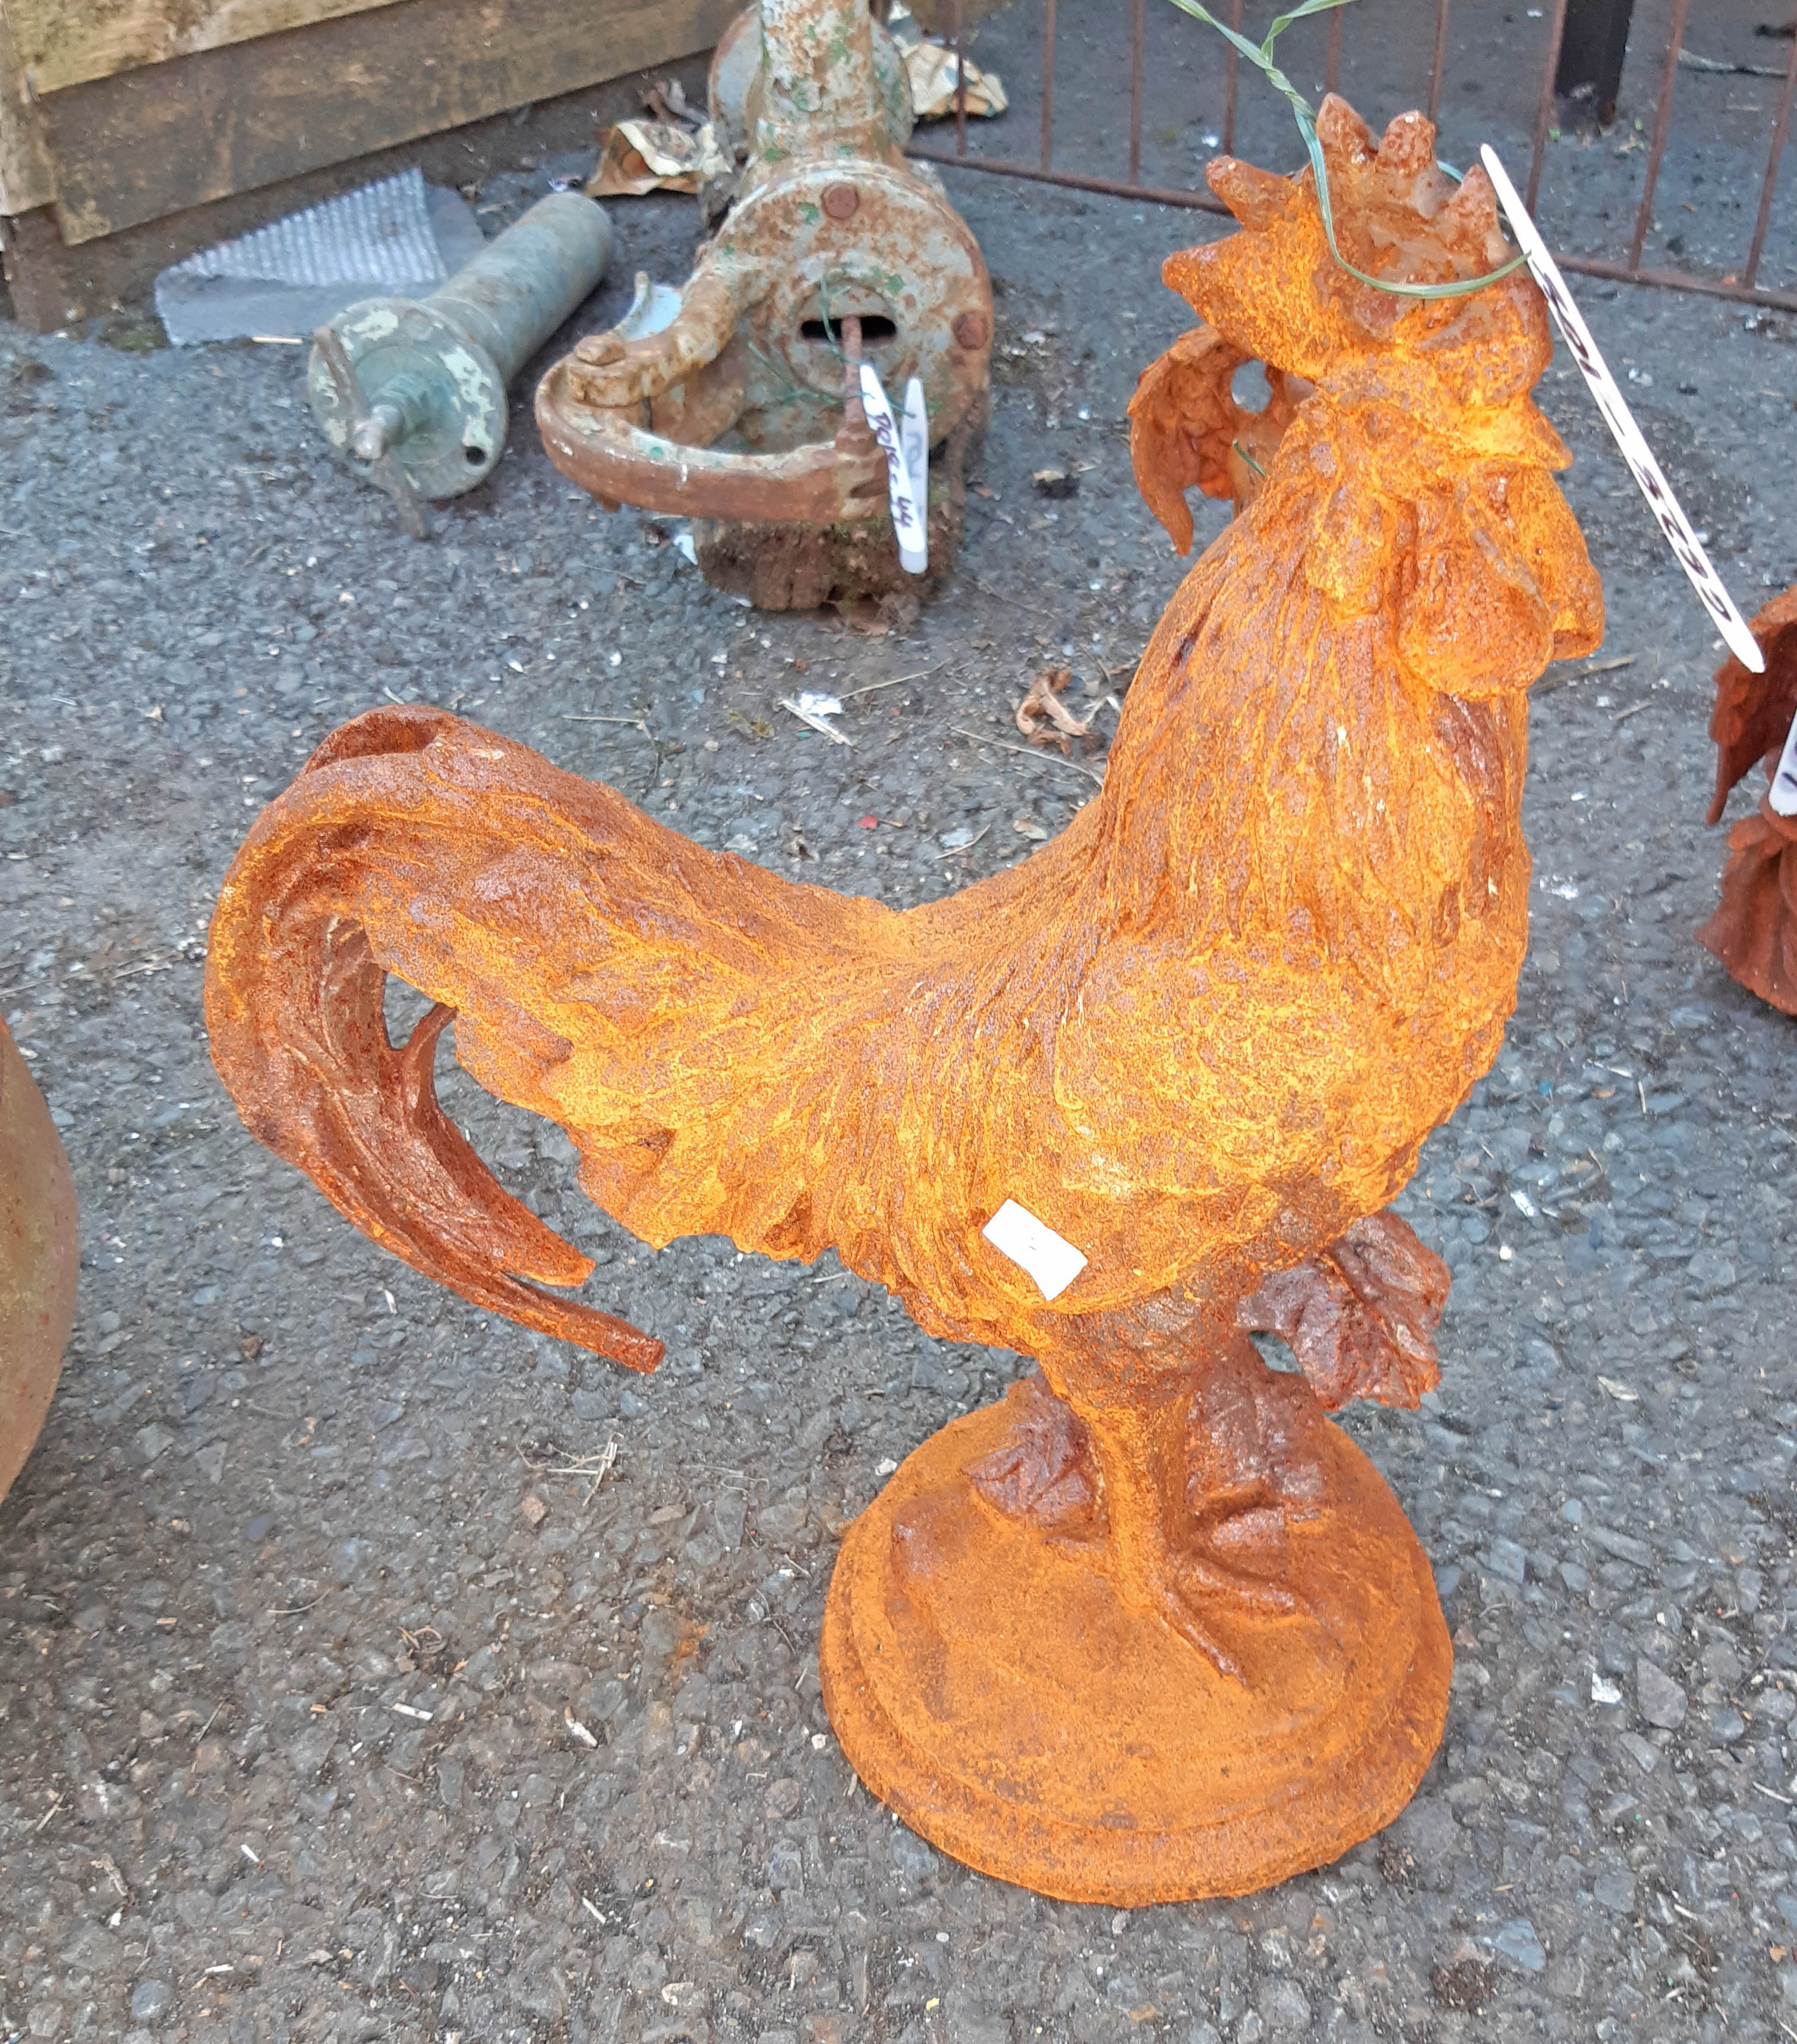 A cast iron cockerel